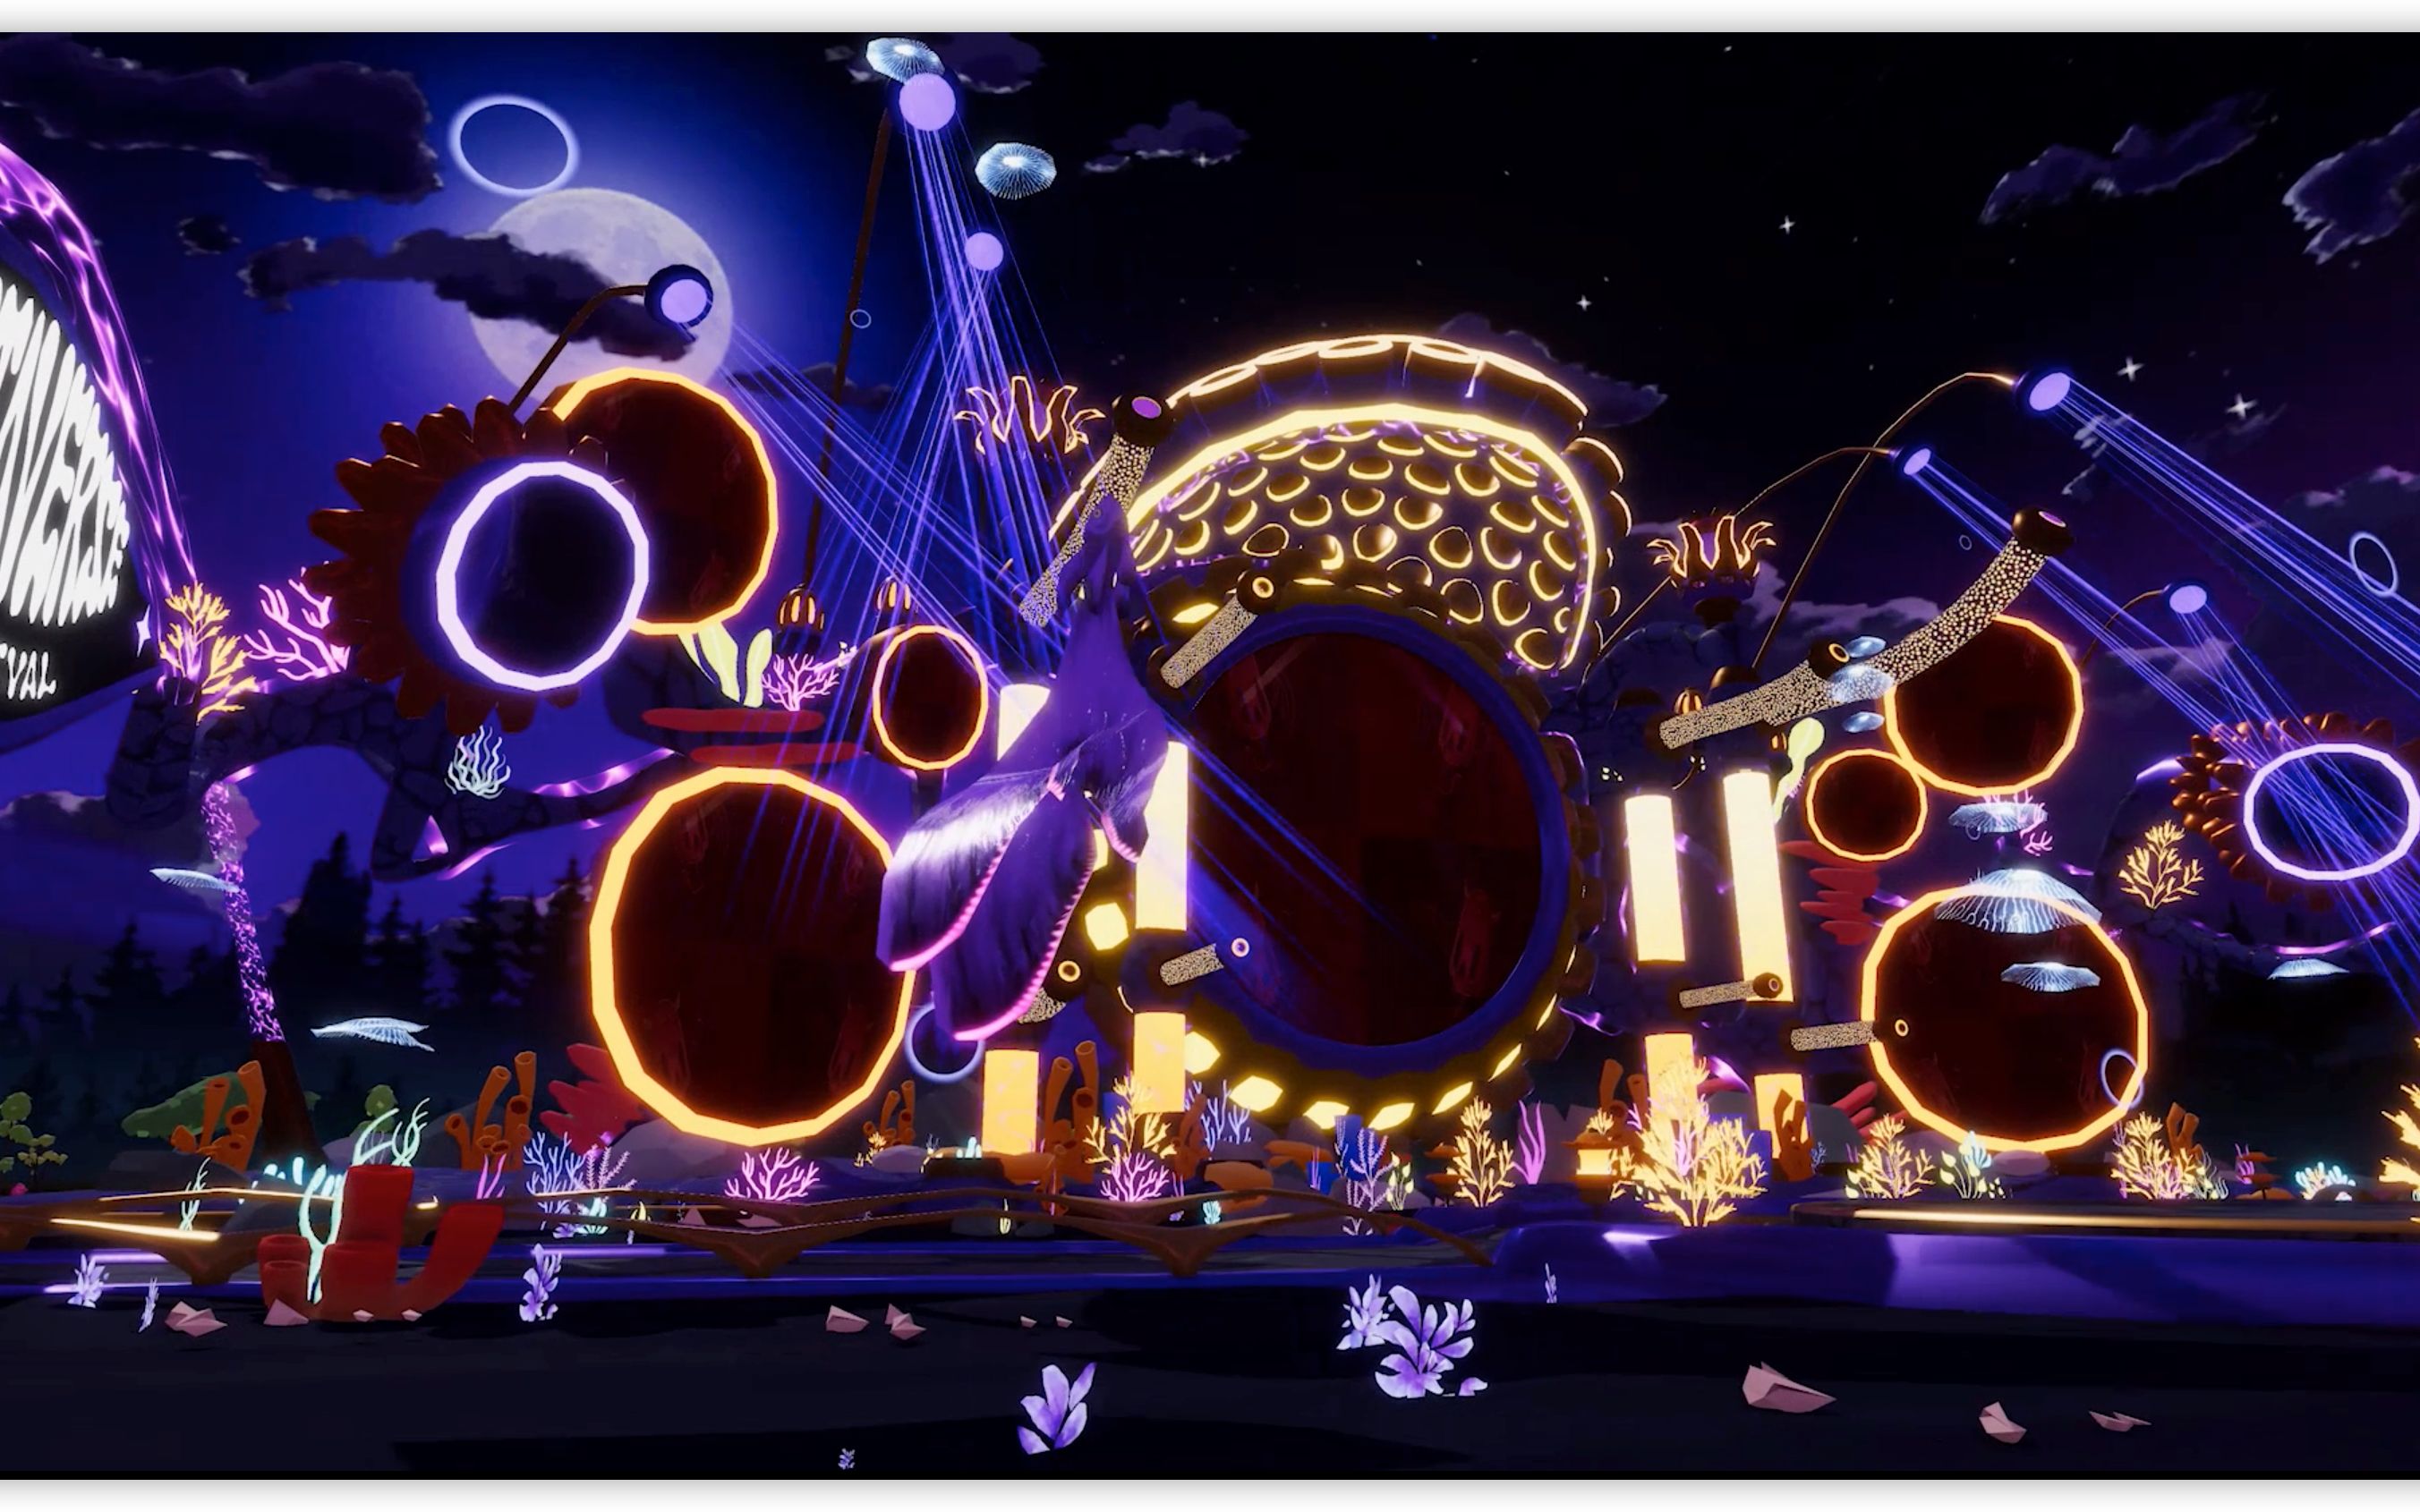 这是一张色彩斑斓的夜景图片，展示了灯光璀璨的音乐节场景，有巨大的乐器和音符装置，营造出梦幻般的氛围。